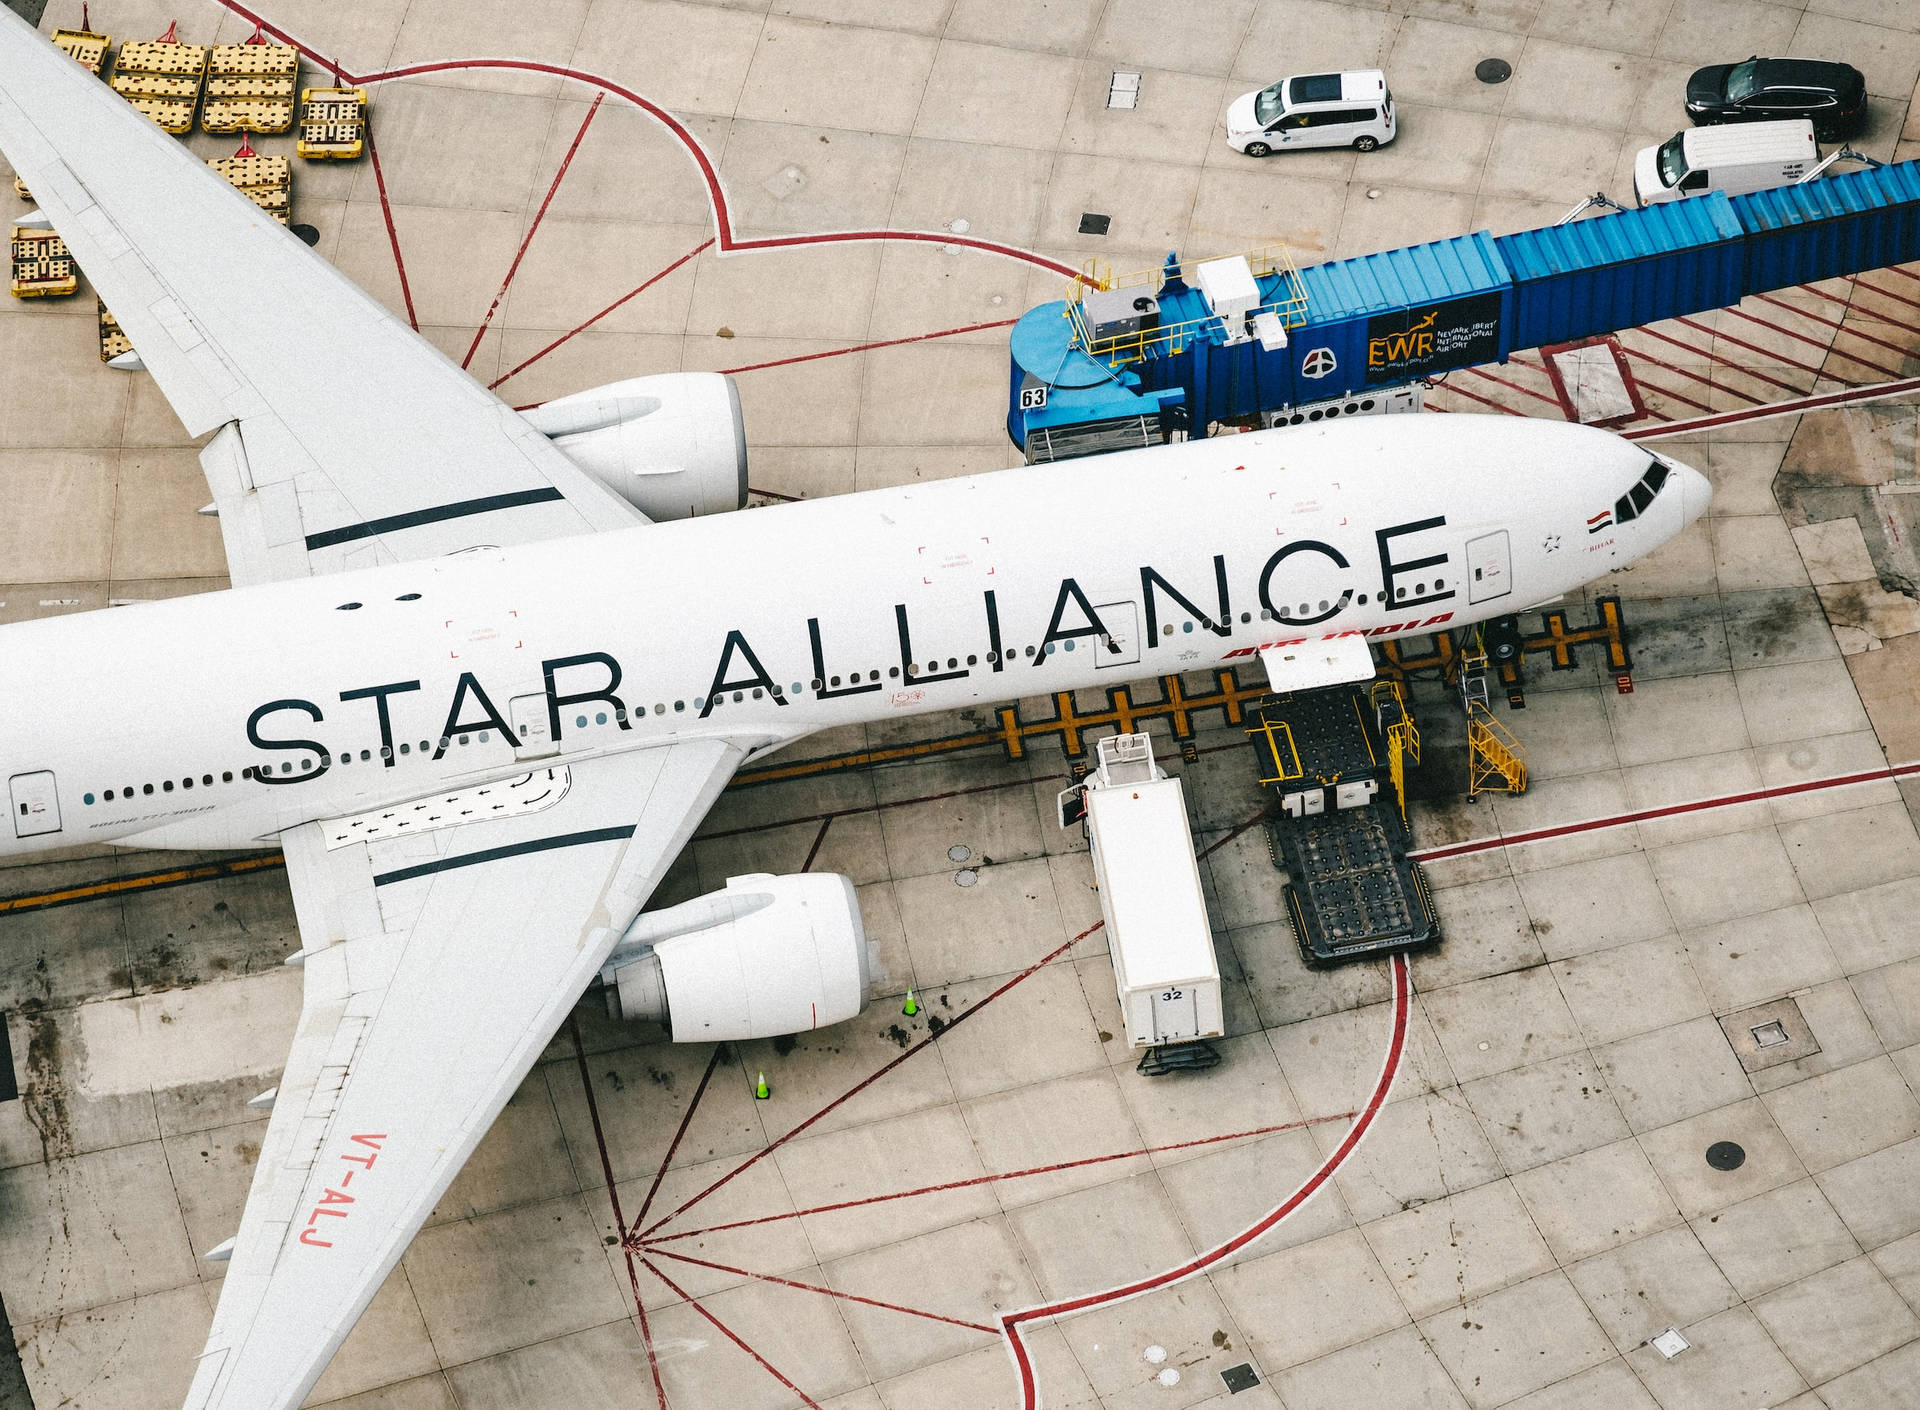 Flygpassagerarflygplan Star Alliance Wallpaper